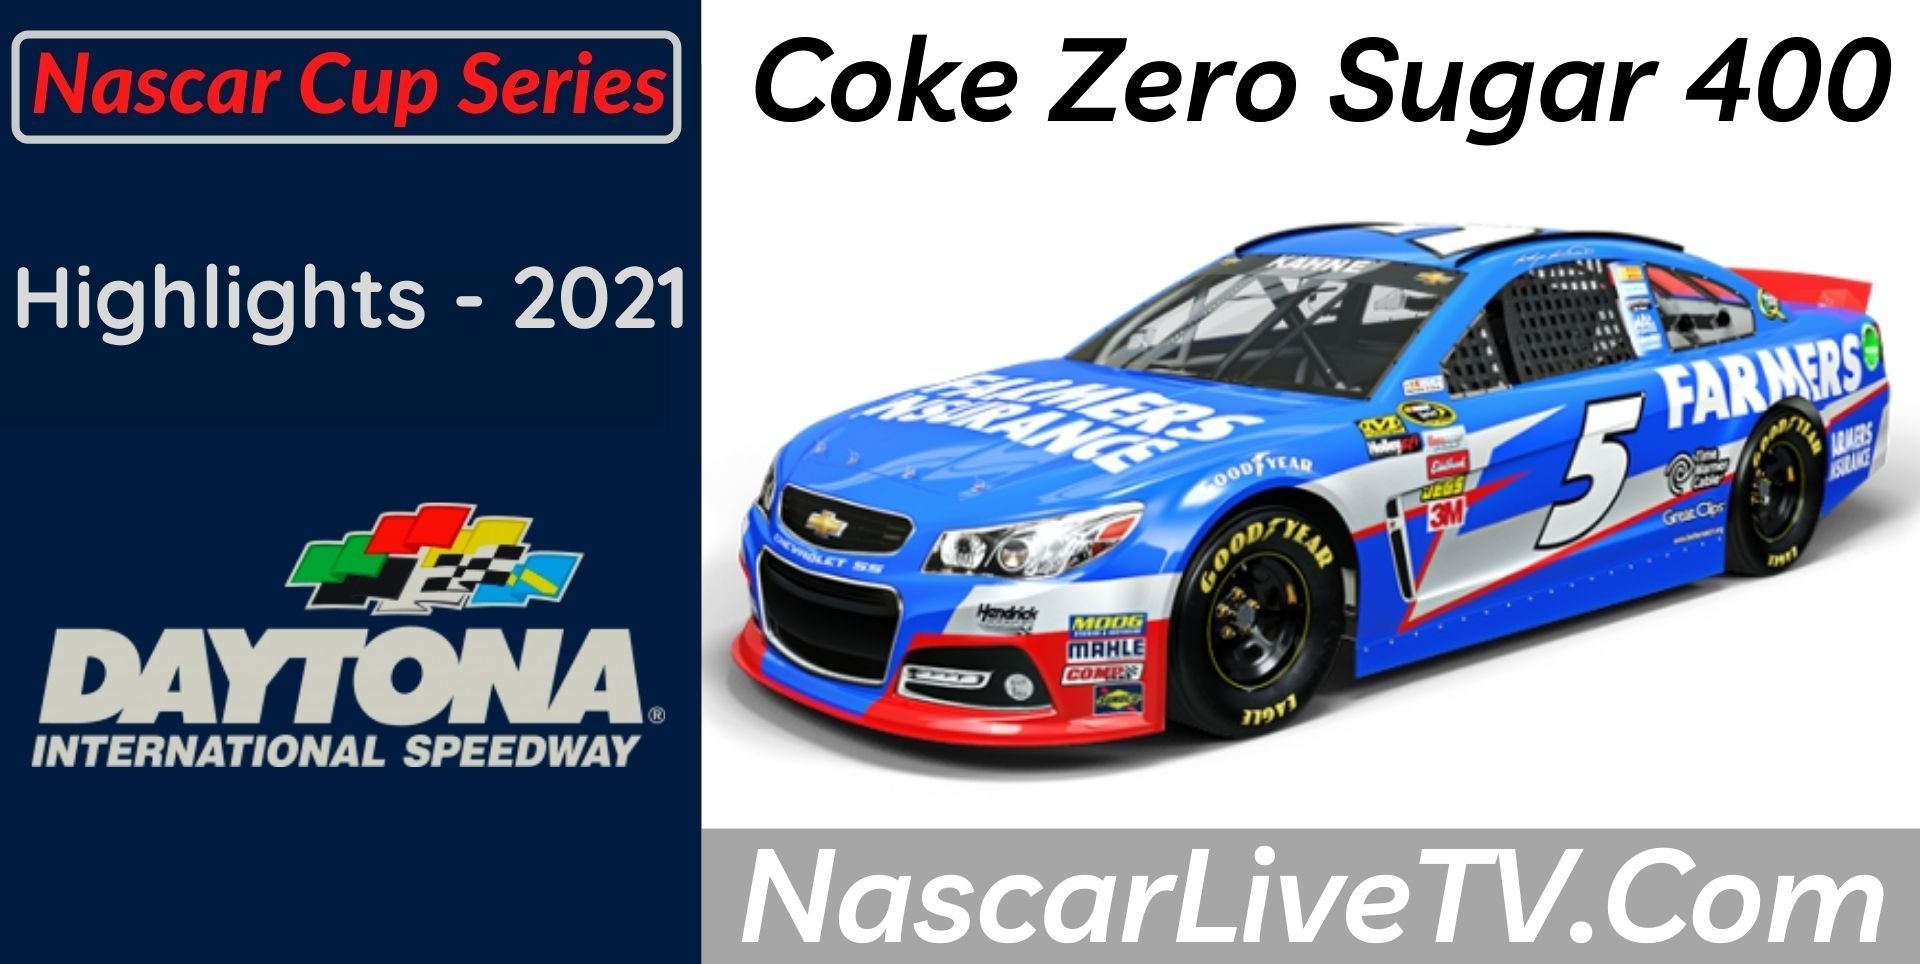 Coke Zero Sugar 400 Highlights NASCAR Cup Series 2021